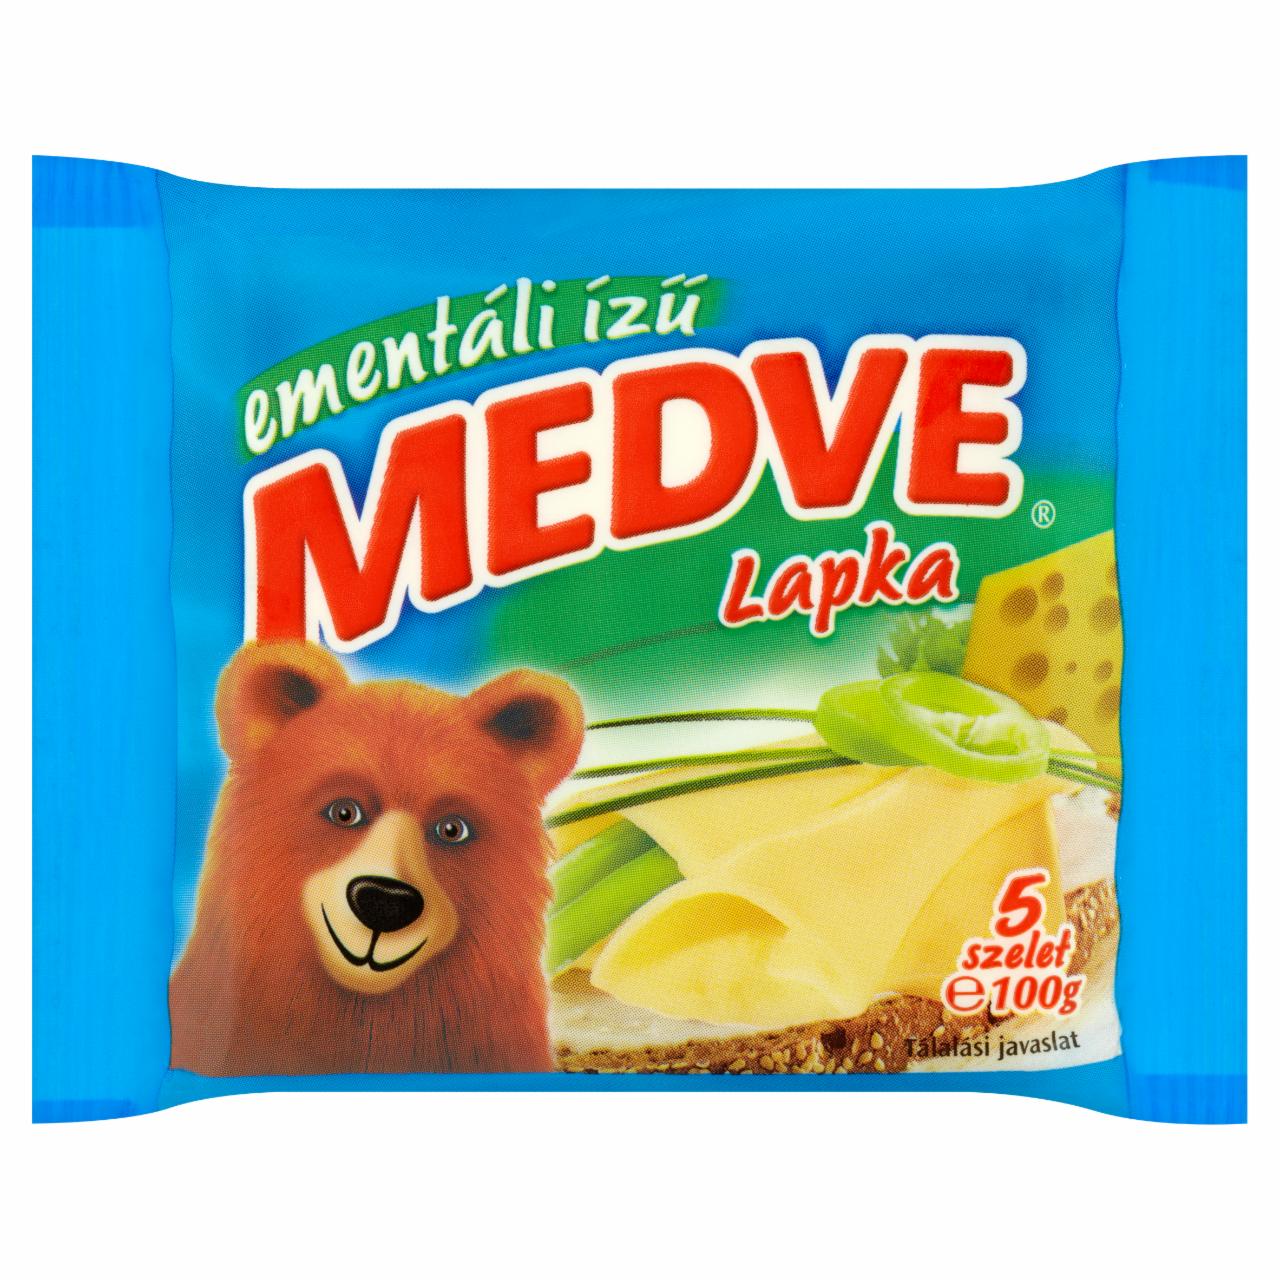 Képek - Medve Lapka ementáliízű ömlesztett sajtszeletek 5 db 100 g